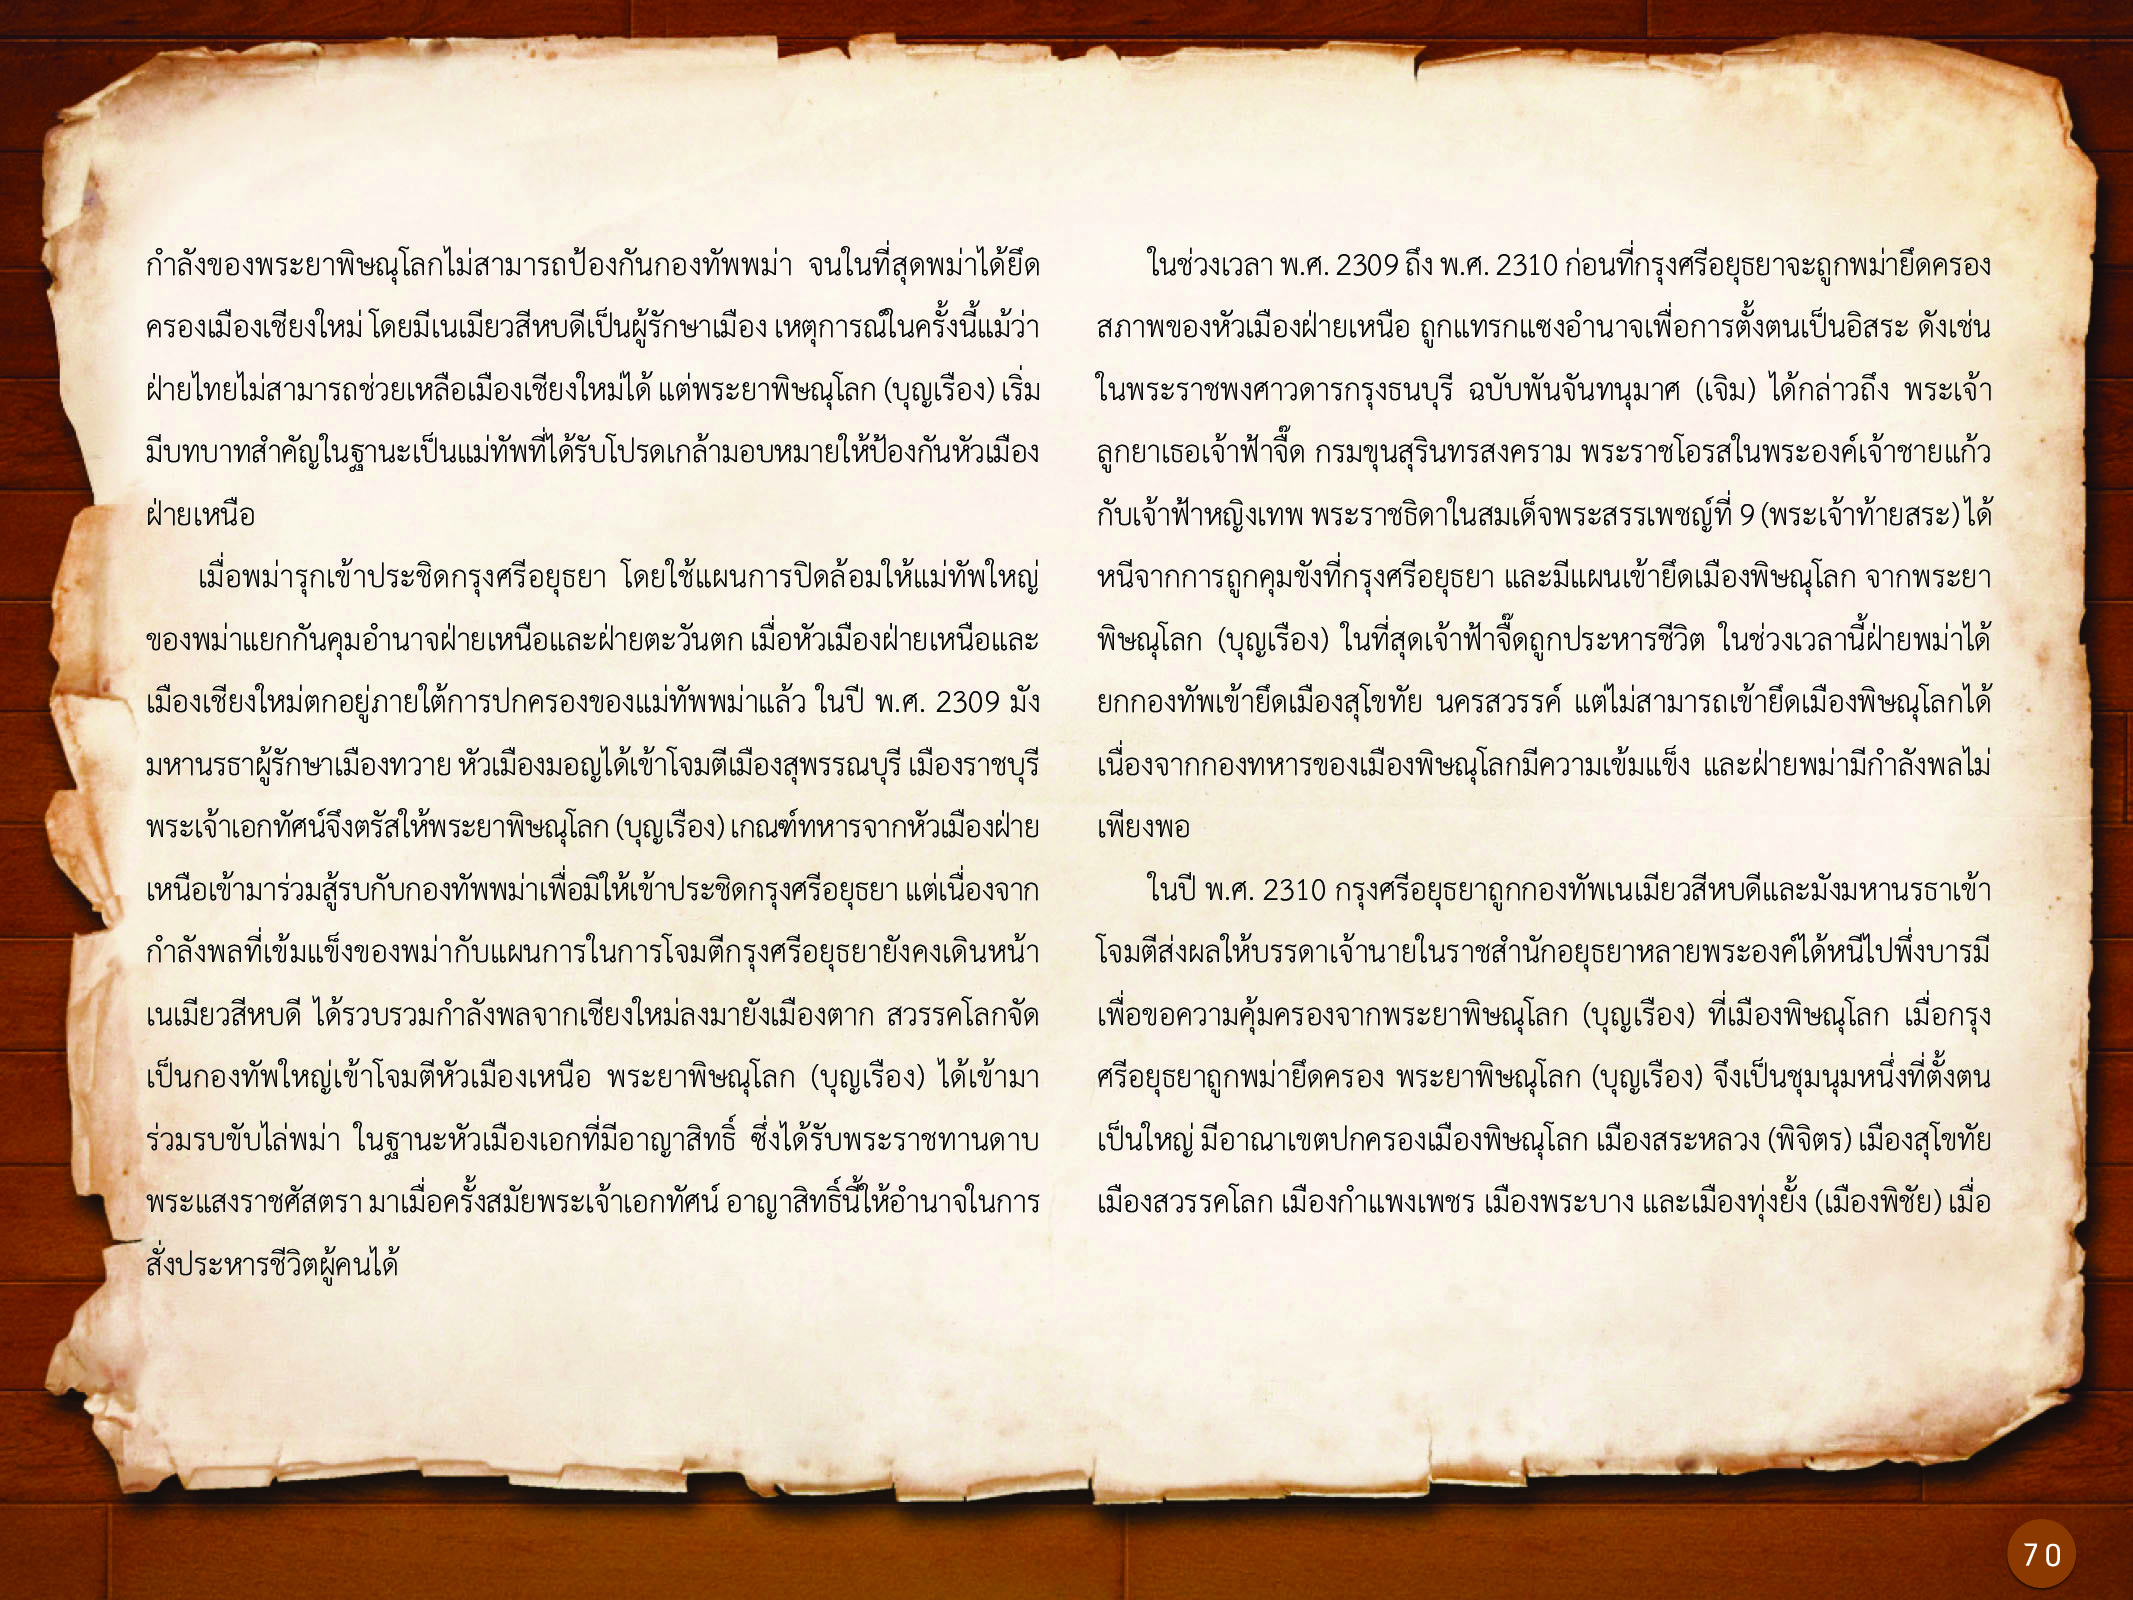 ประวัติศาสตร์กรุงธนบุรี ./images/history_dhonburi/70.jpg